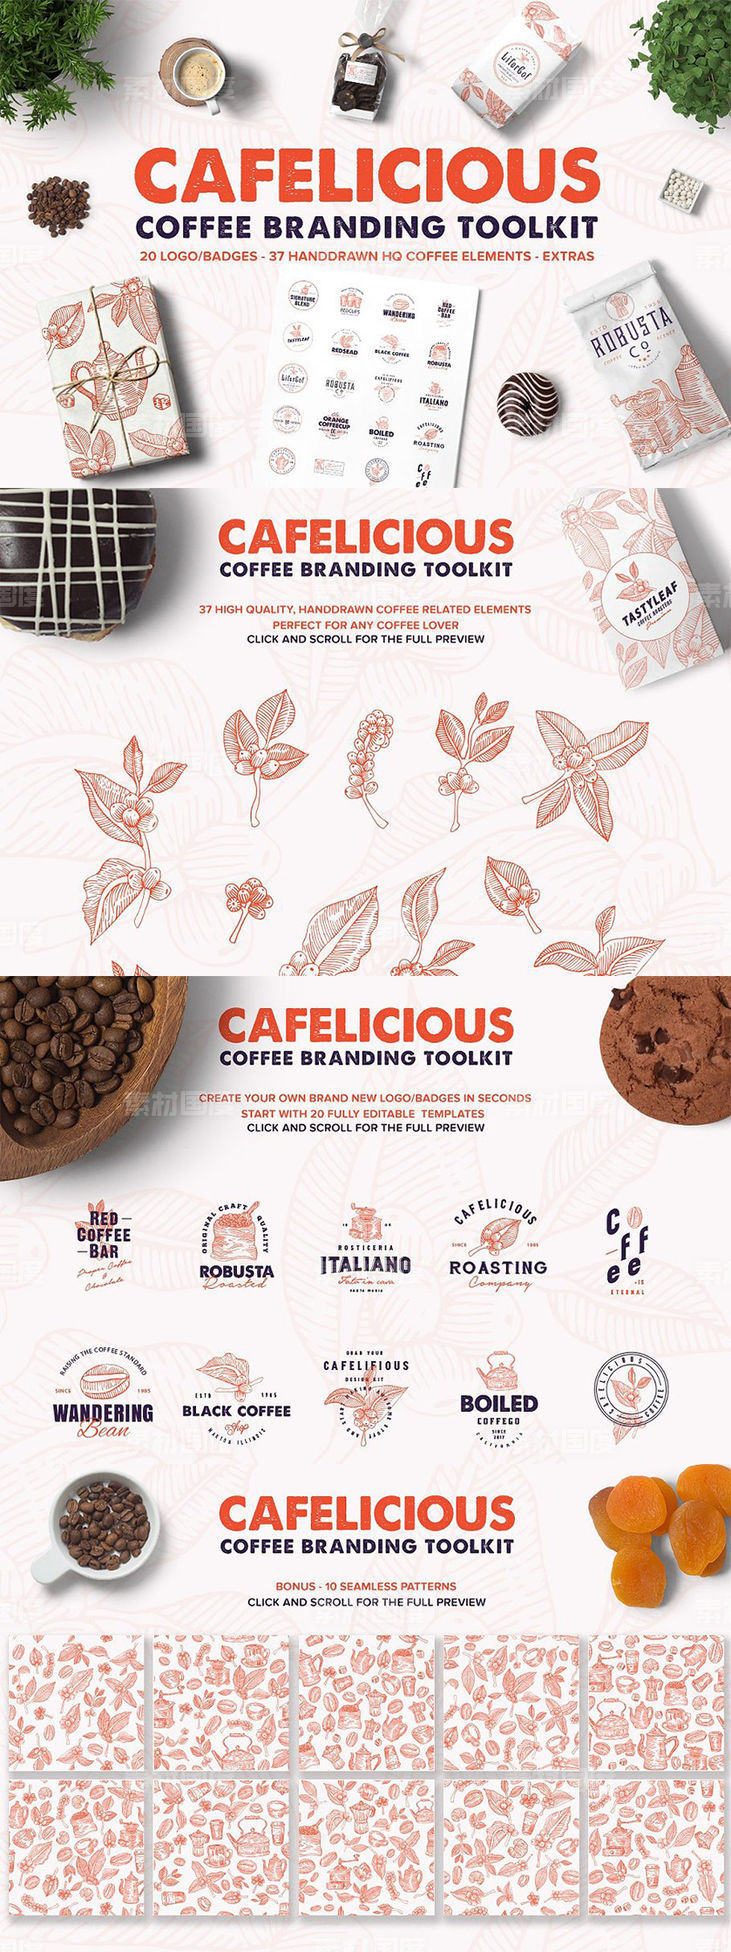 咖啡品牌专业Logo设计模板合集 Cafelicious ndash Coffee Branding Kit